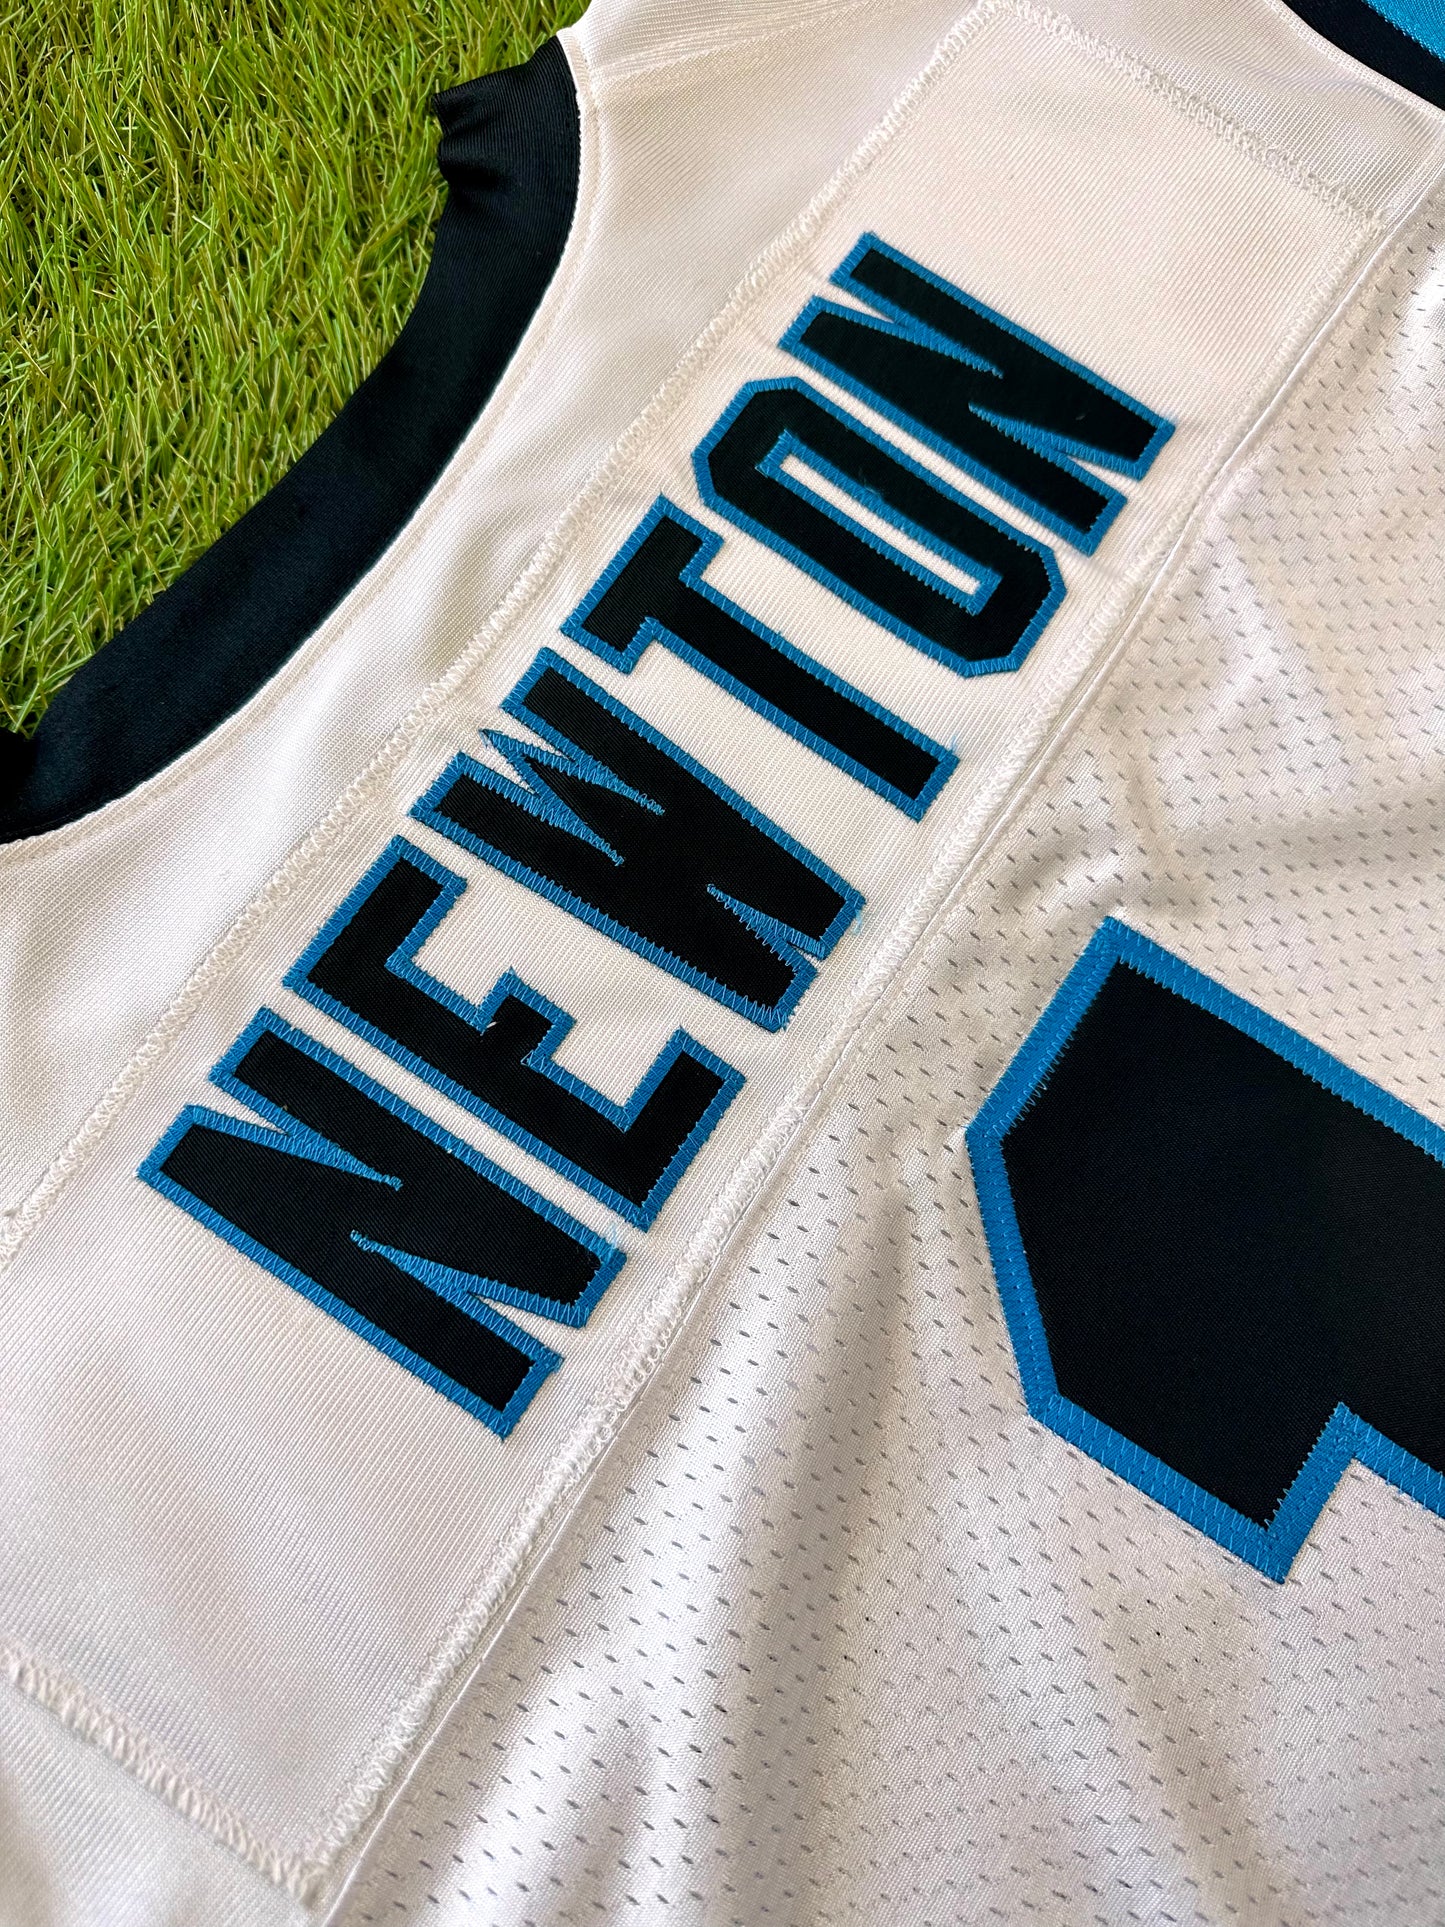 Carolina Panthers Cam Newton 2015 NFL Football Jersey (48/XL)